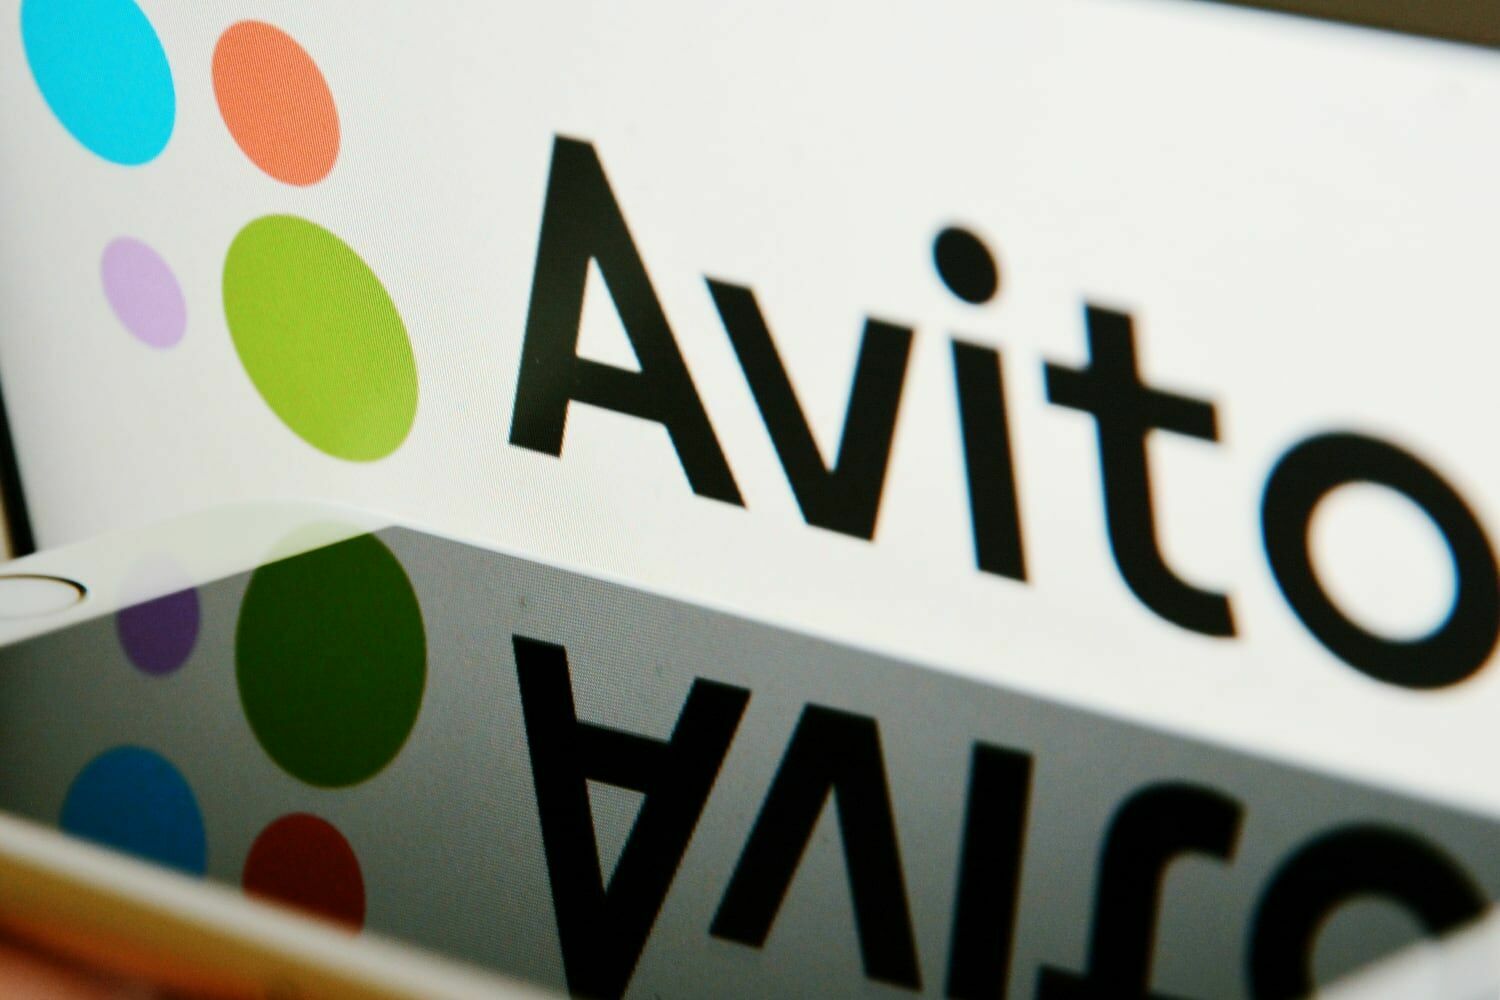 Объем продаж Avito вырос на 55%